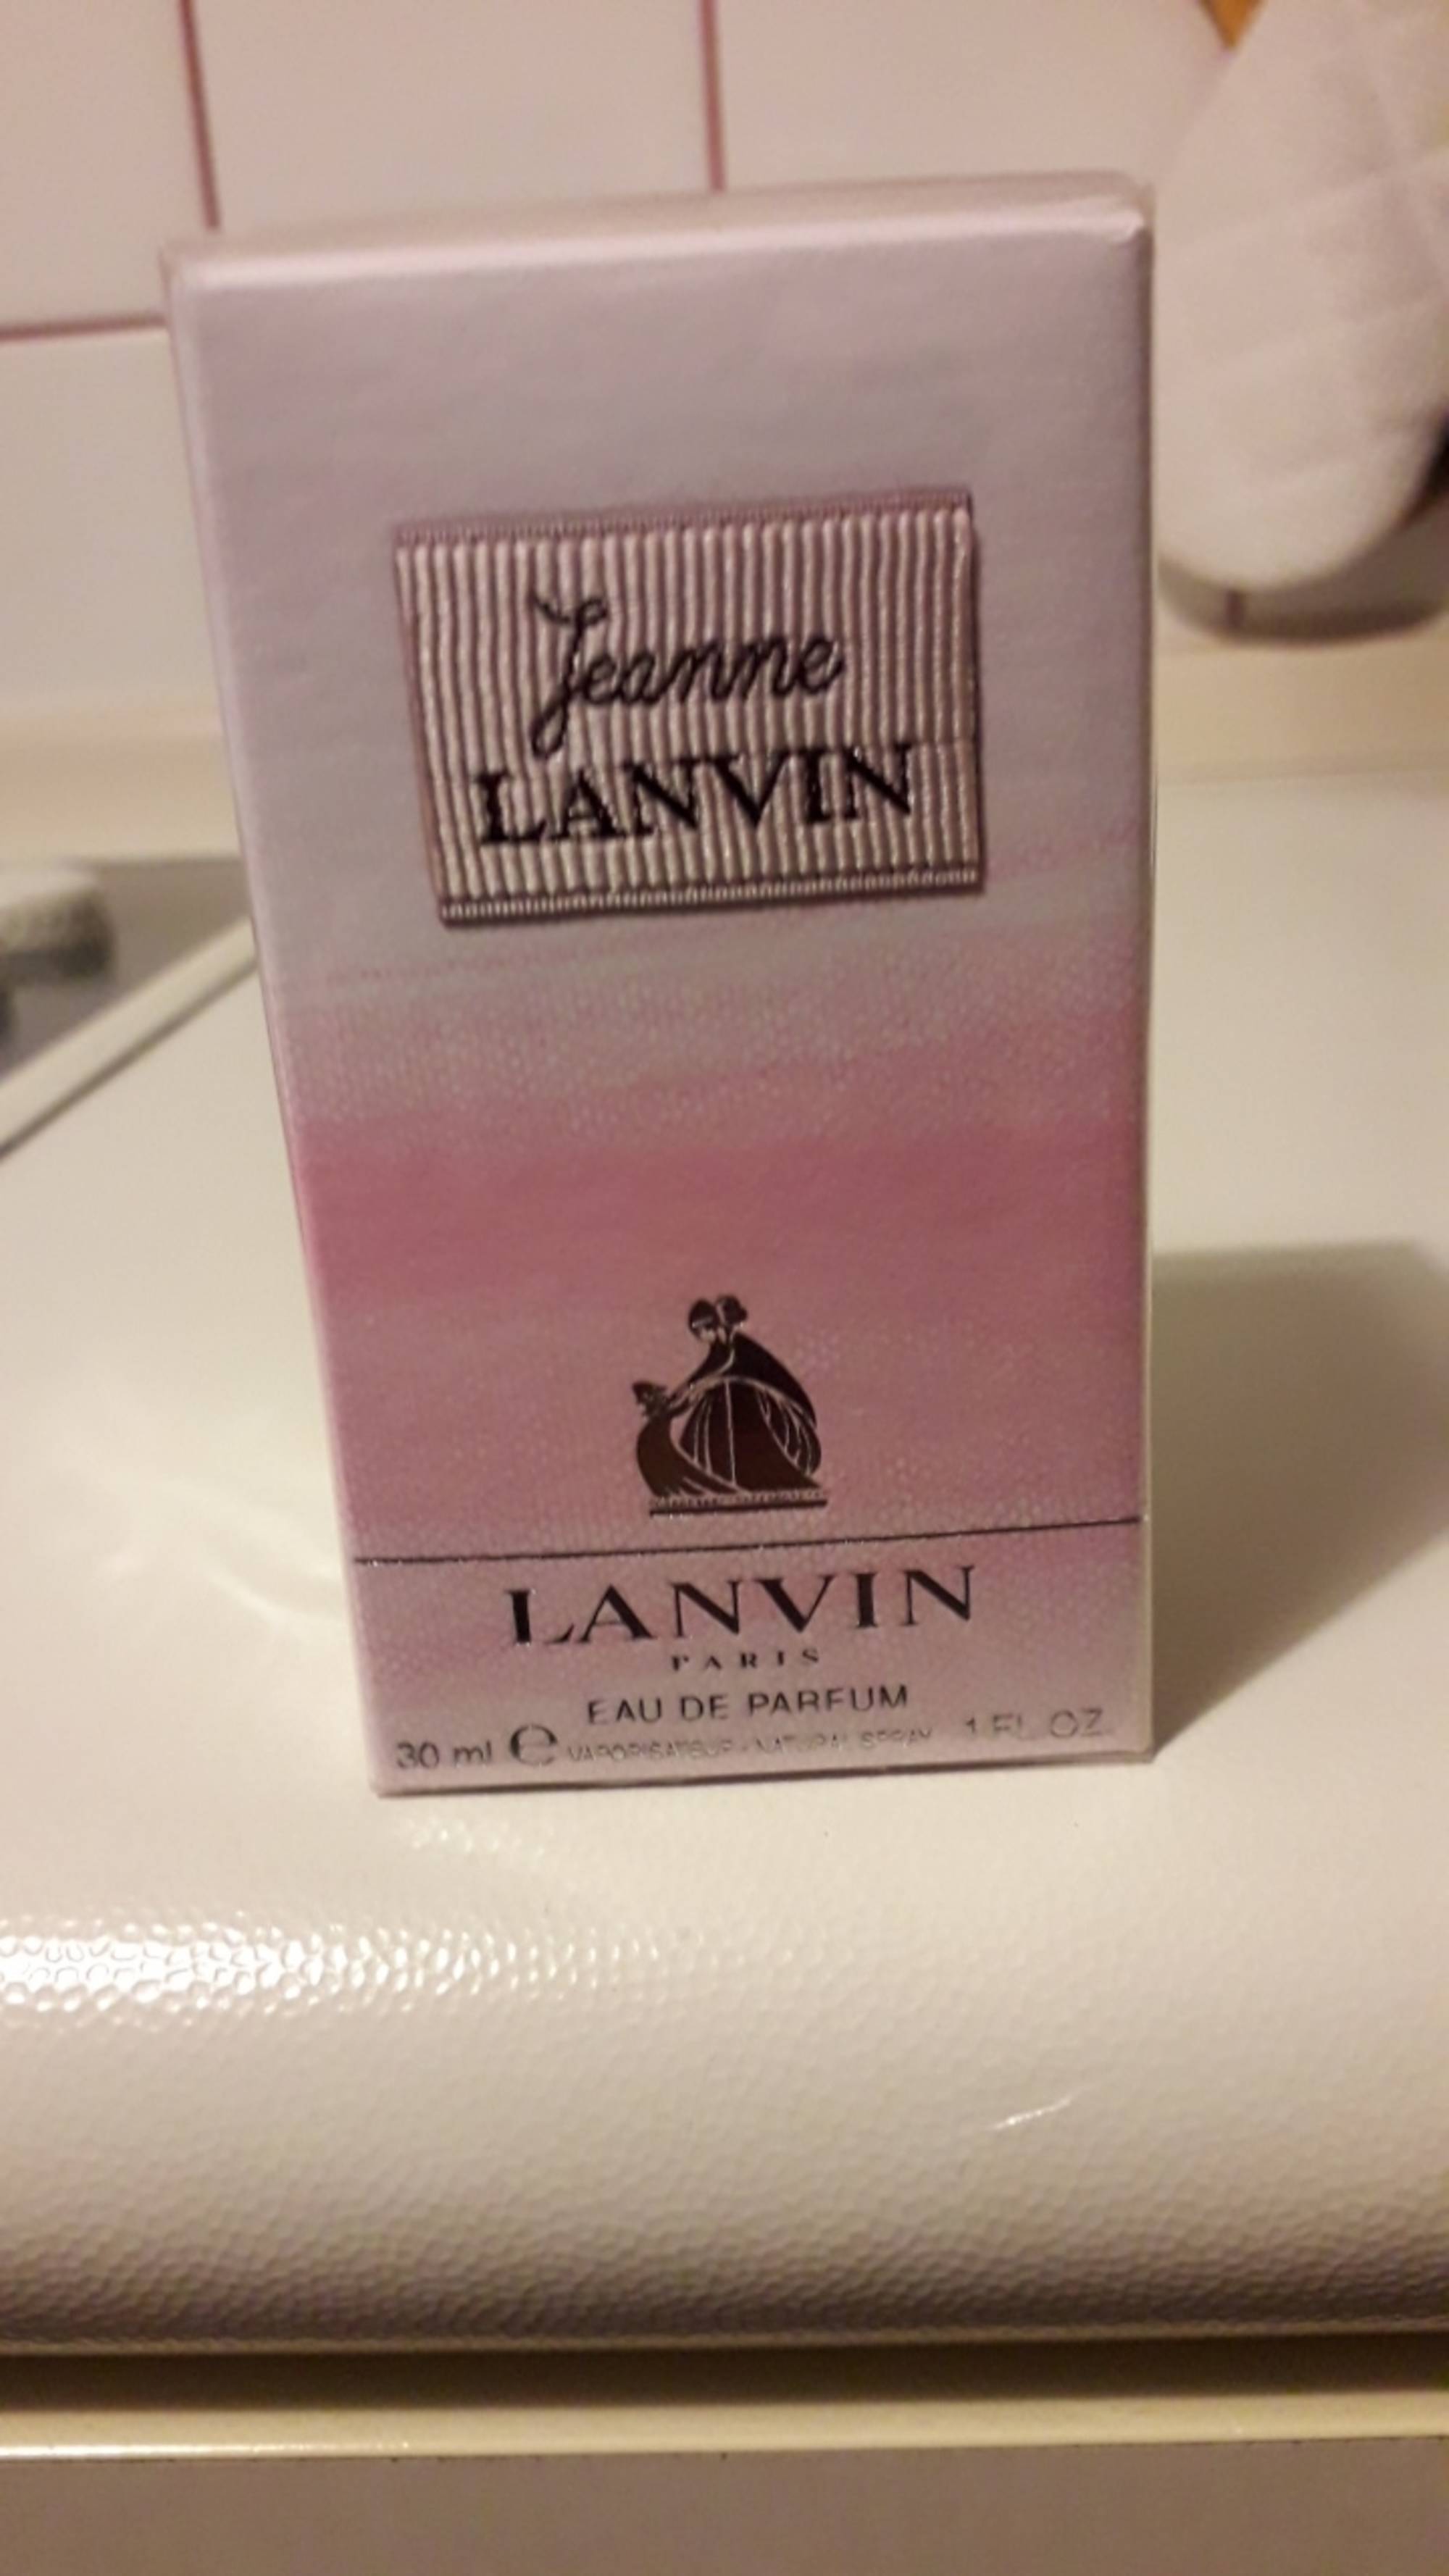 LANVIN - Jeanne Lanvin - Eau de parfum